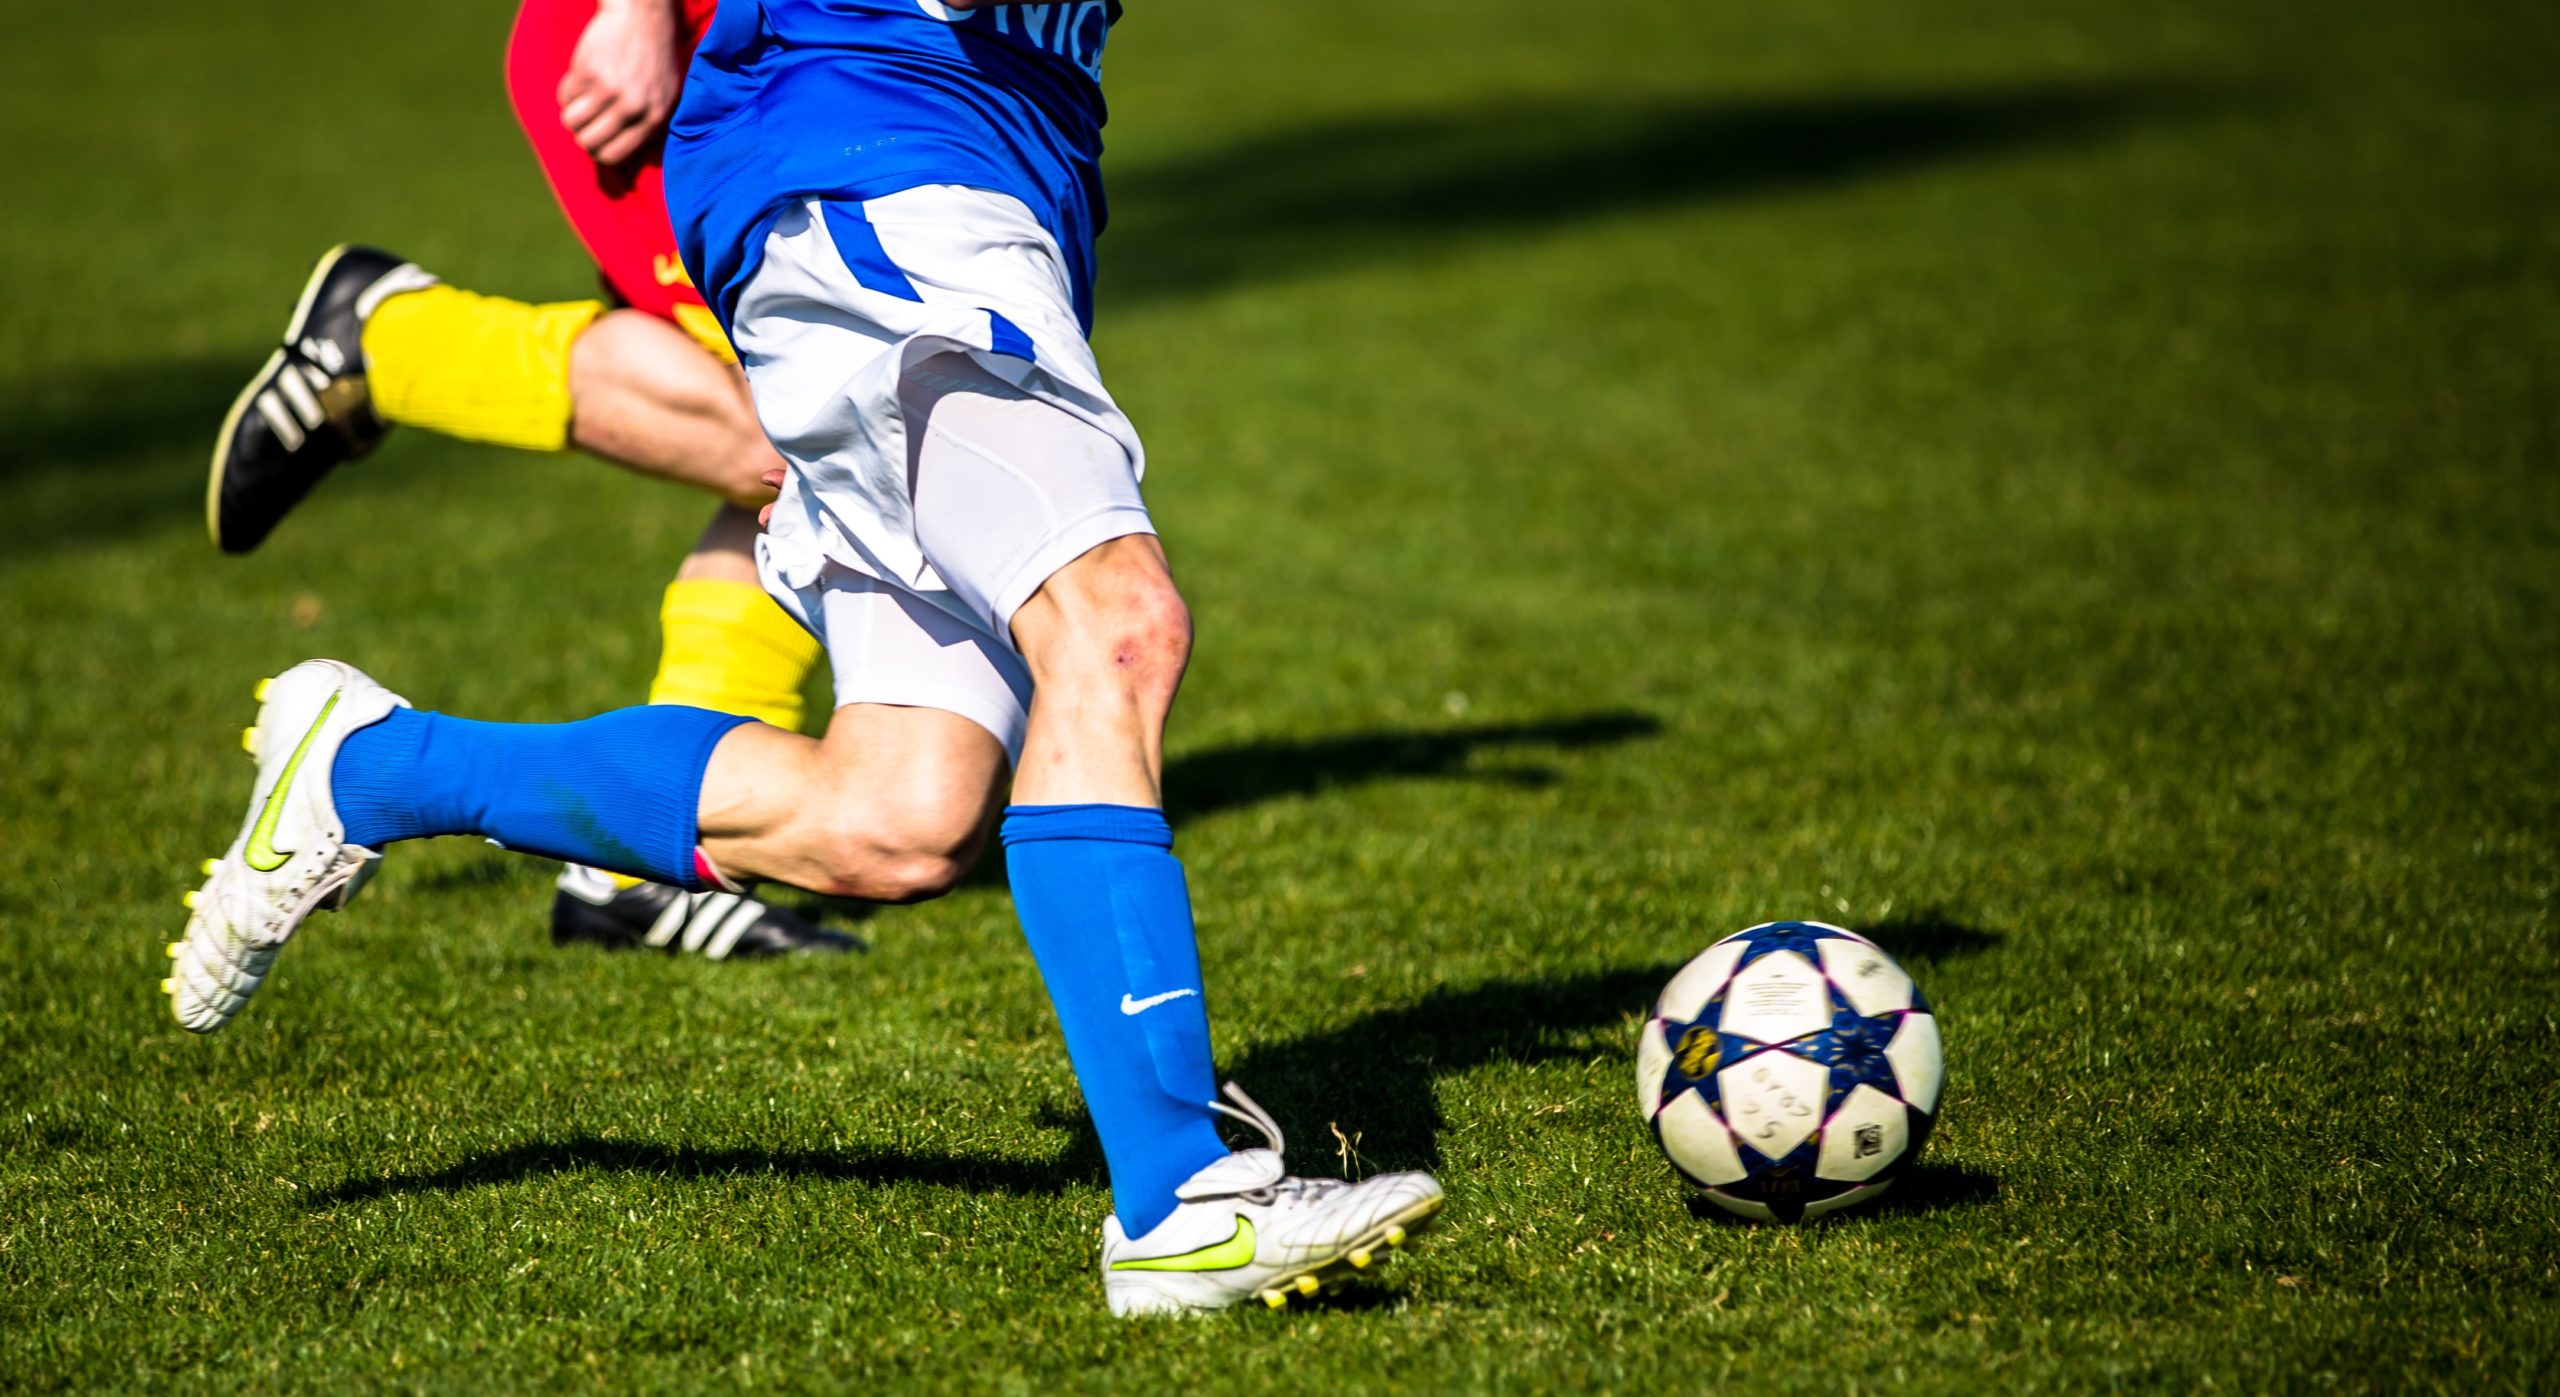 Rs サッカーなど球技スポーツの持久力を鍛えるには 繰り返しスプリントトレーニング 明日から役立つスポーツ科学ブログ